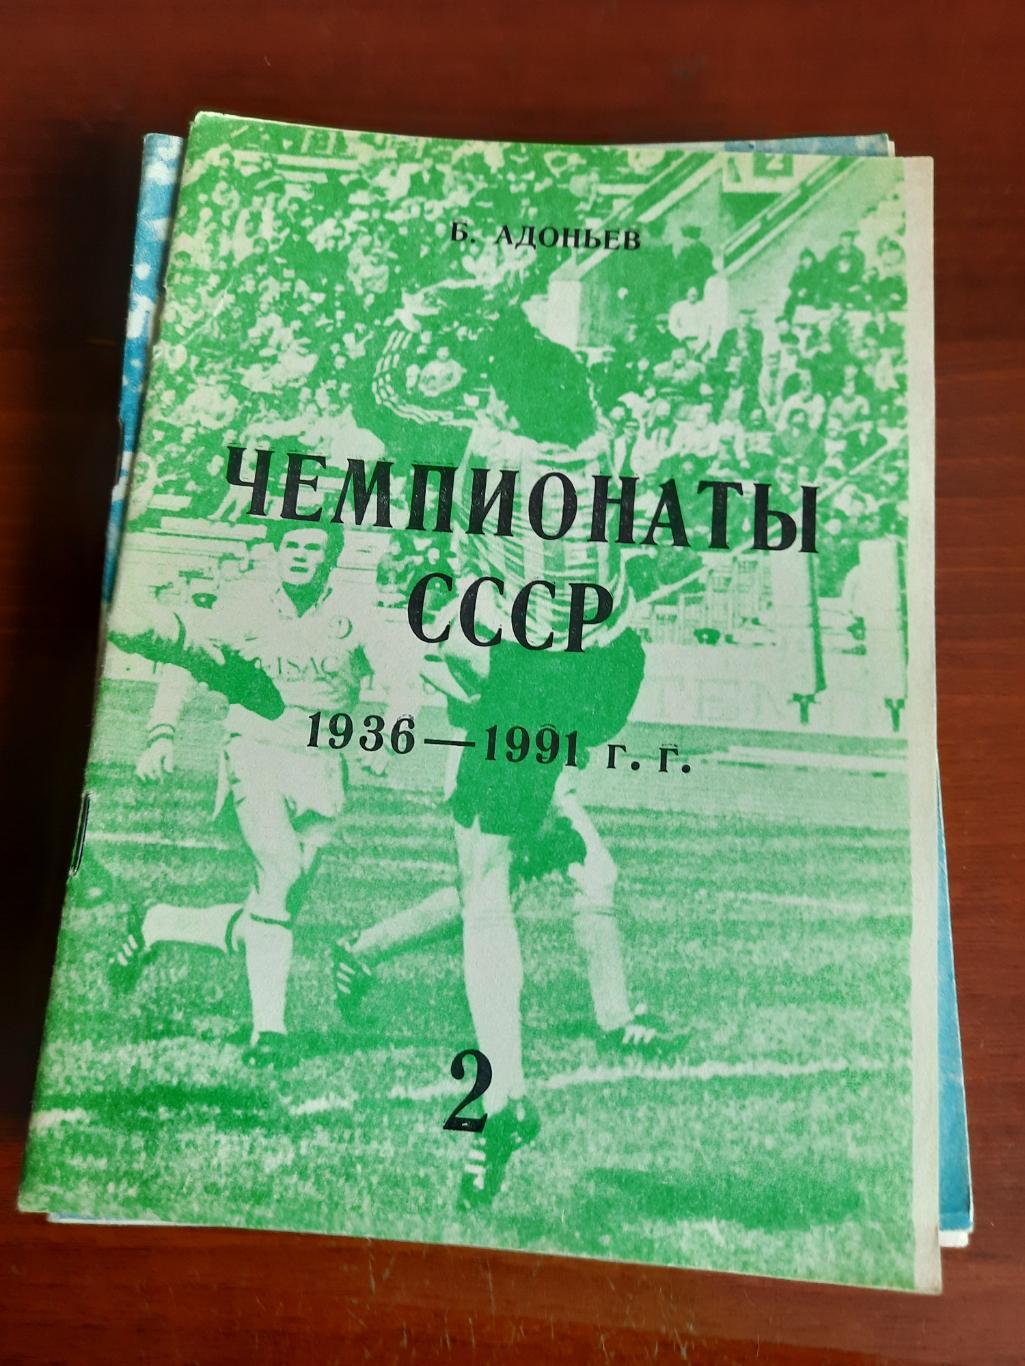 Ю. Адоньев Чемпионаты СССР 1936 - 1991. Часть 2